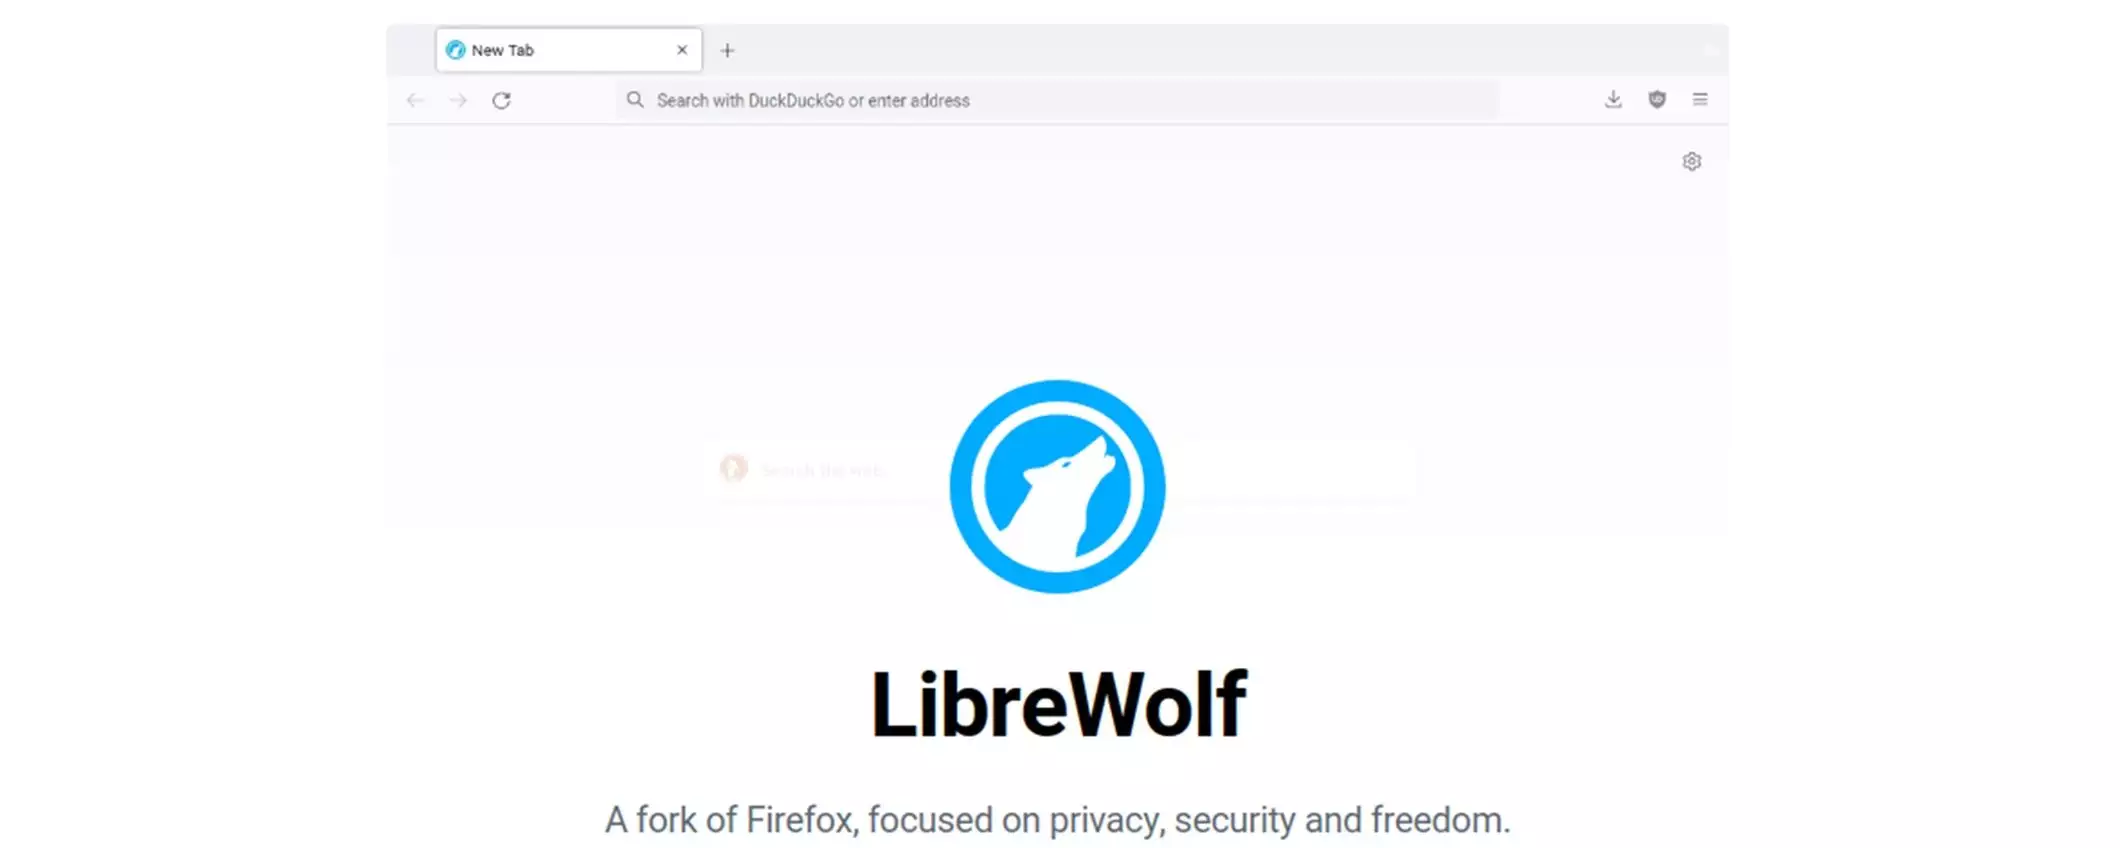 Come installare LibreWolf, il browser per navigare protetti